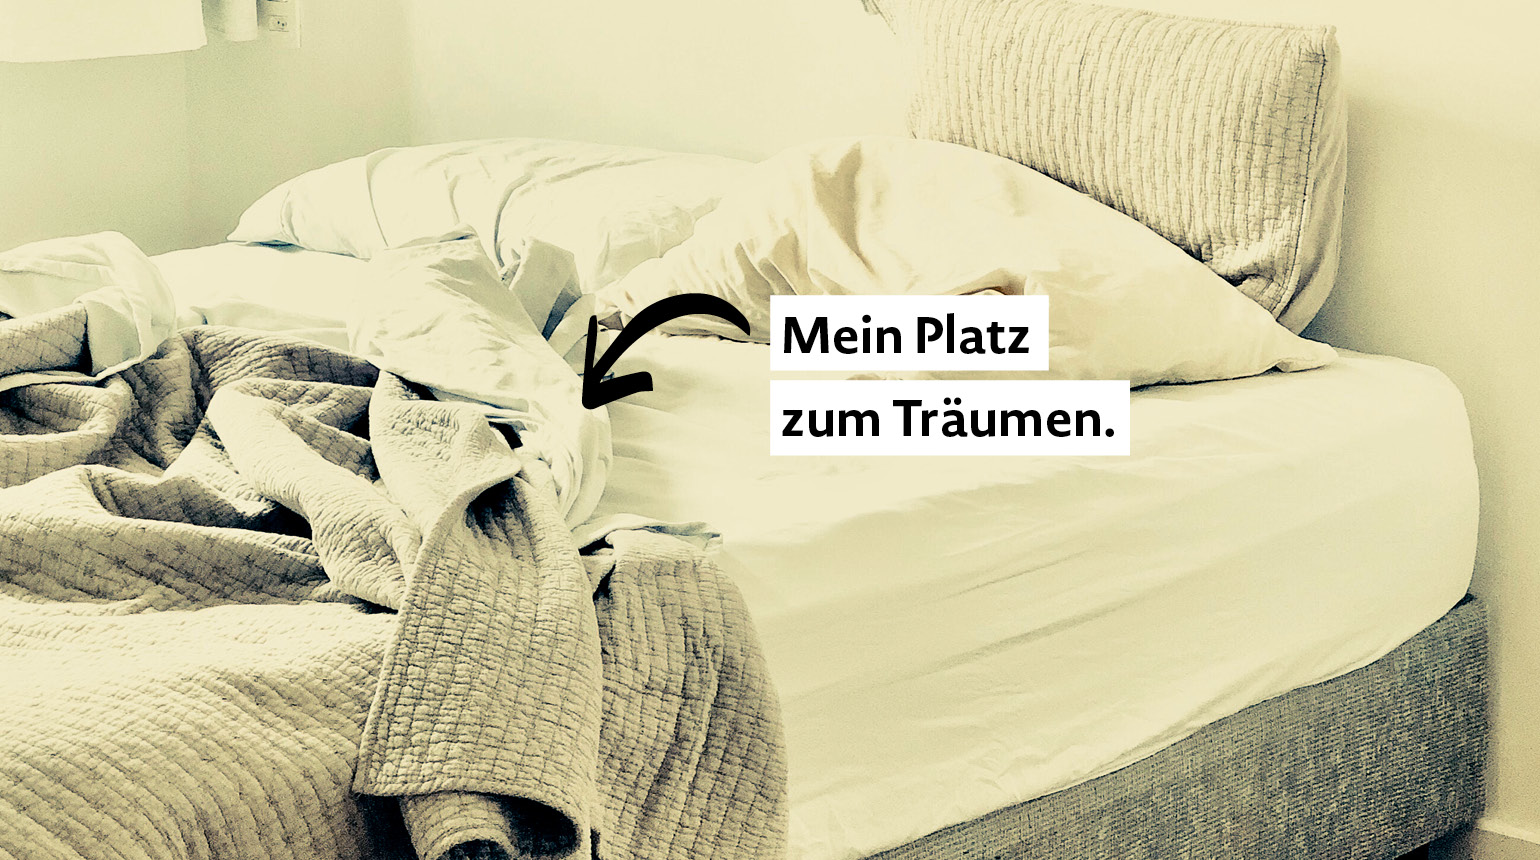 Foto: Ein zerwühltes Bett. Text: Mein Platz zum Träumen.